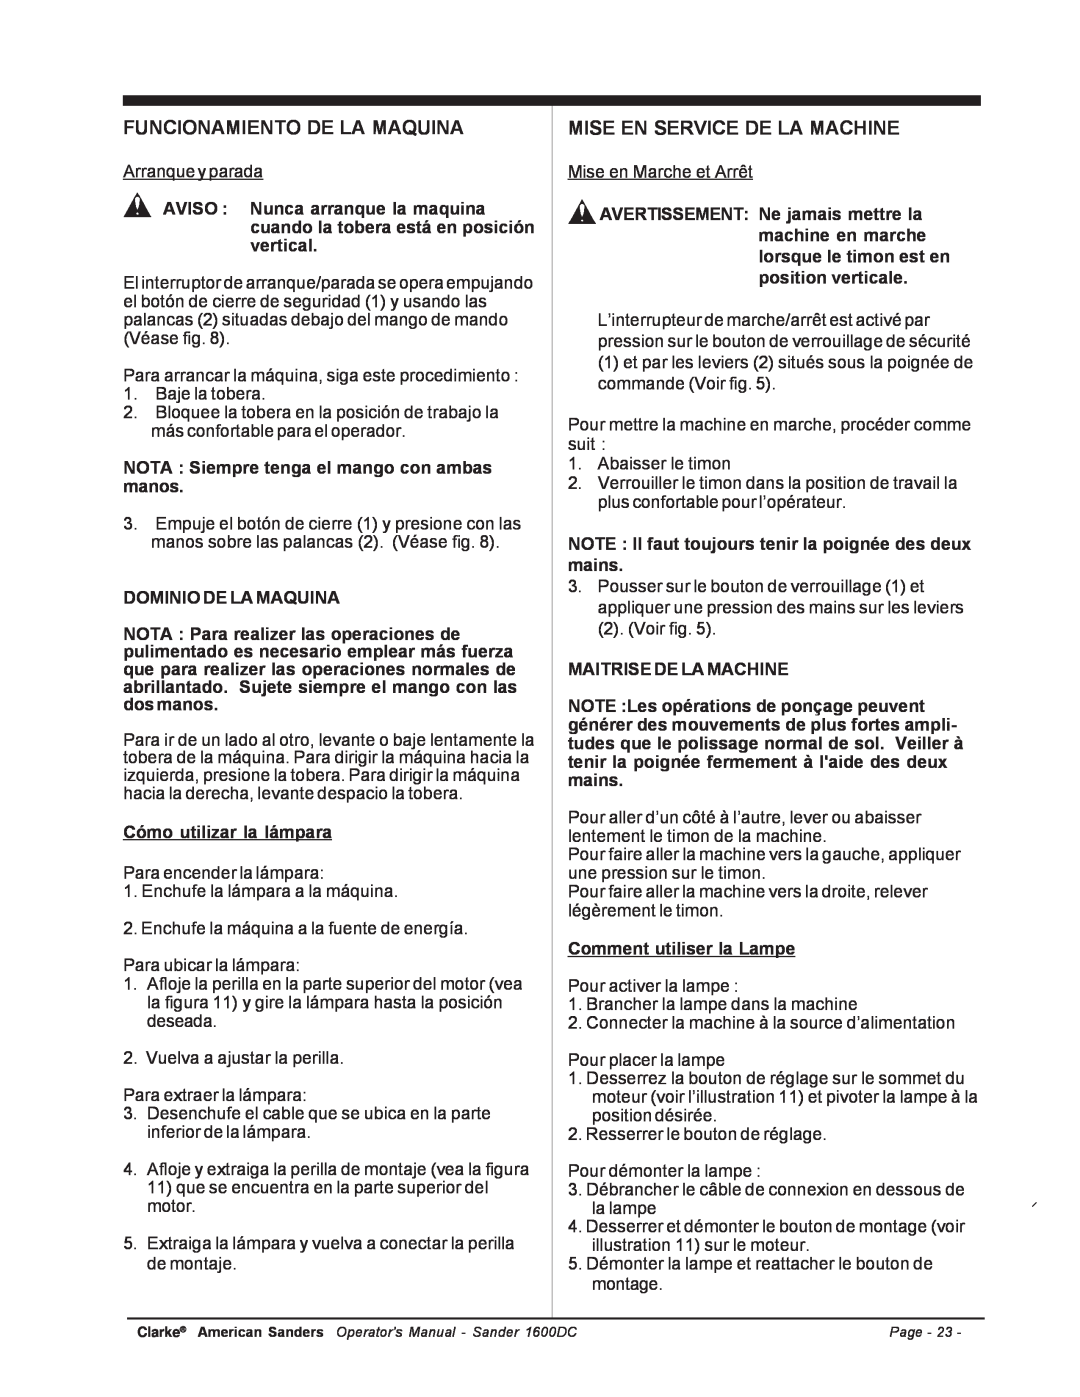 Nilfisk-ALTO C.A.V. 15 manual Funcionamiento De La Maquina, Mise En Service De La Machine 